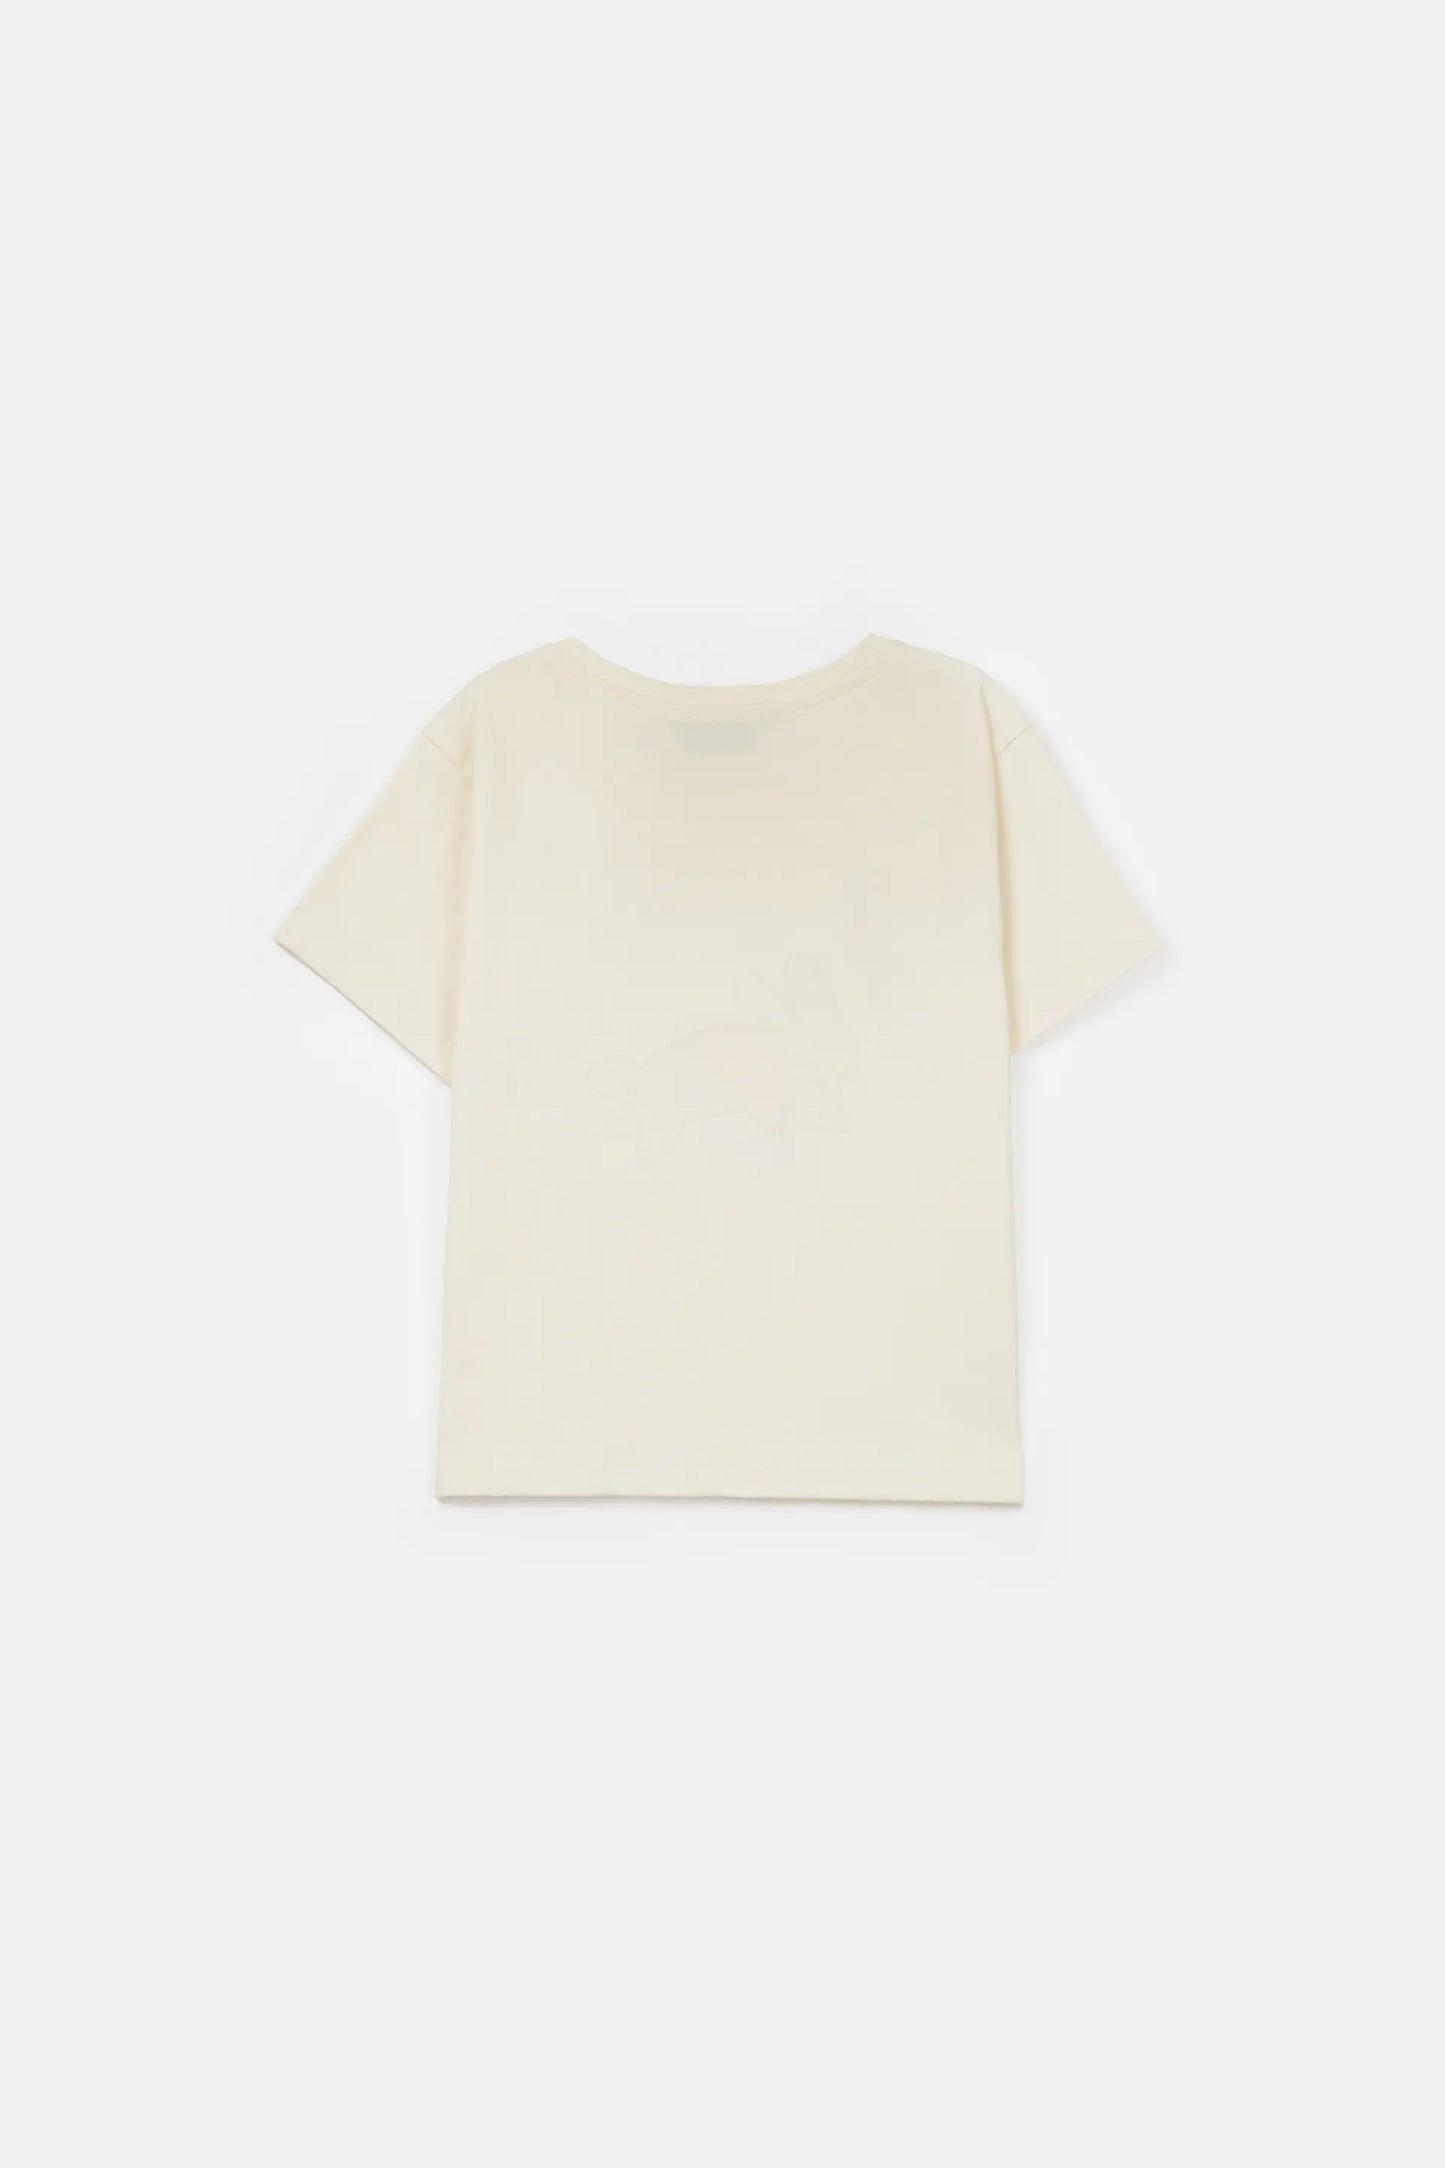 Camiseta unisex de algodón con gráfica de conejo